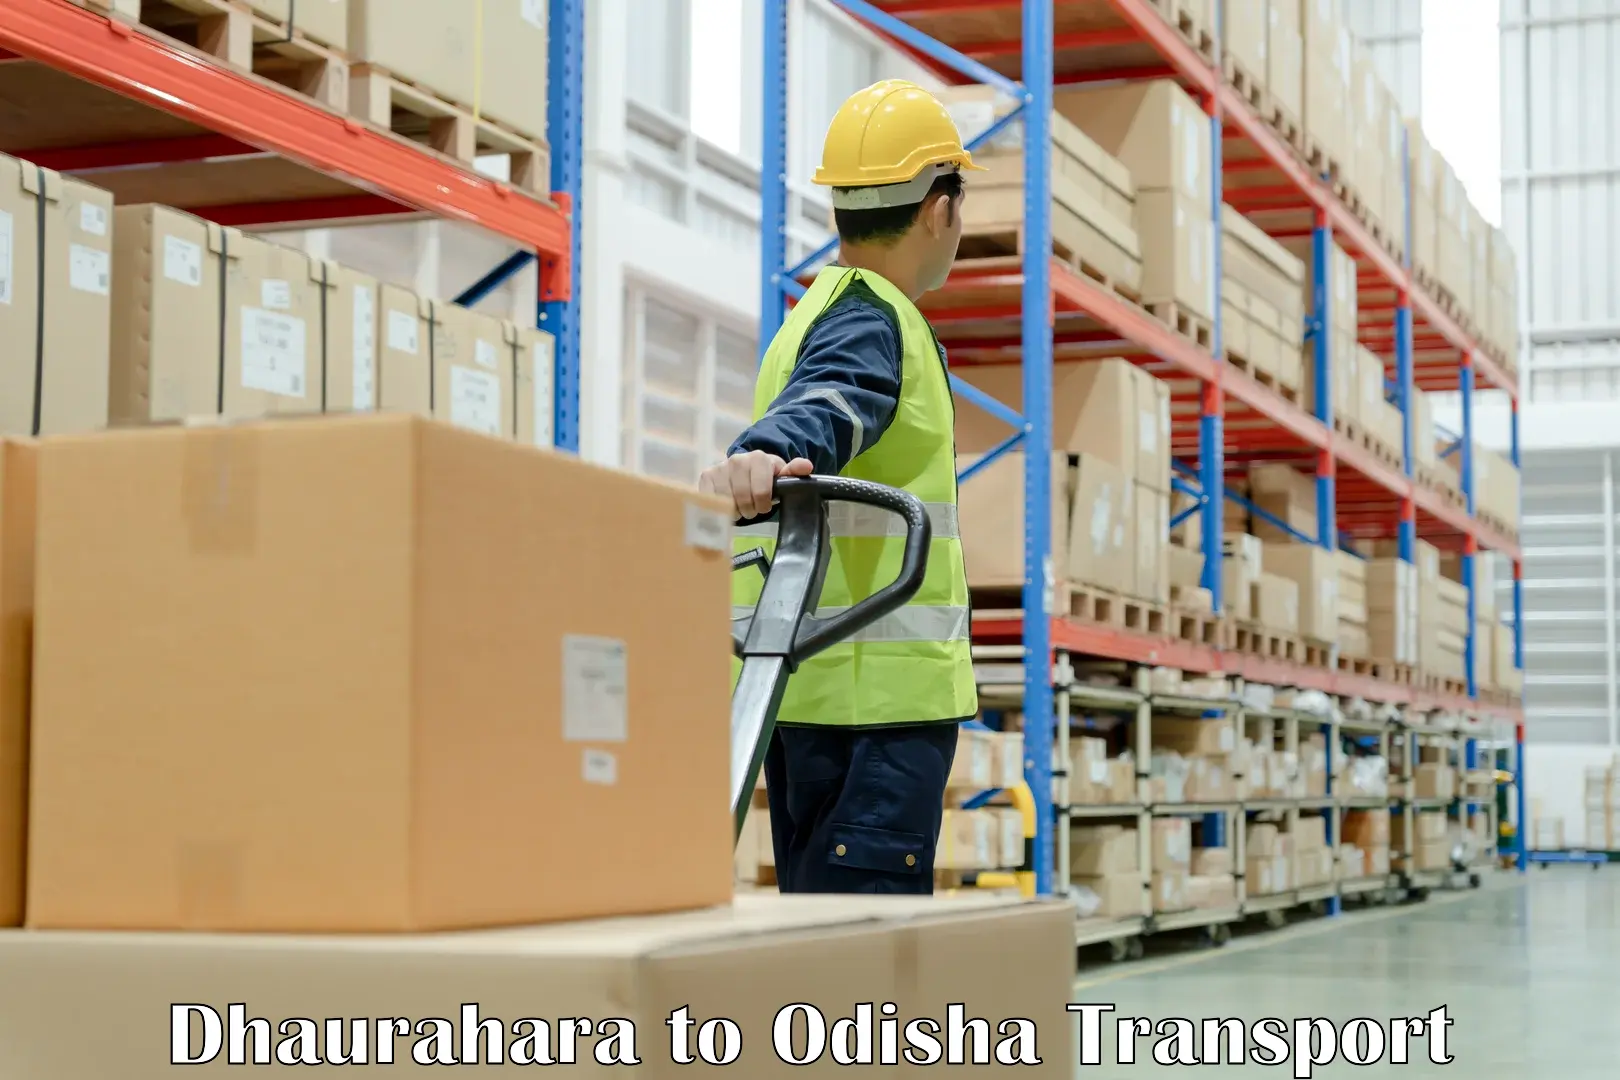 Truck transport companies in India Dhaurahara to Balipokhari